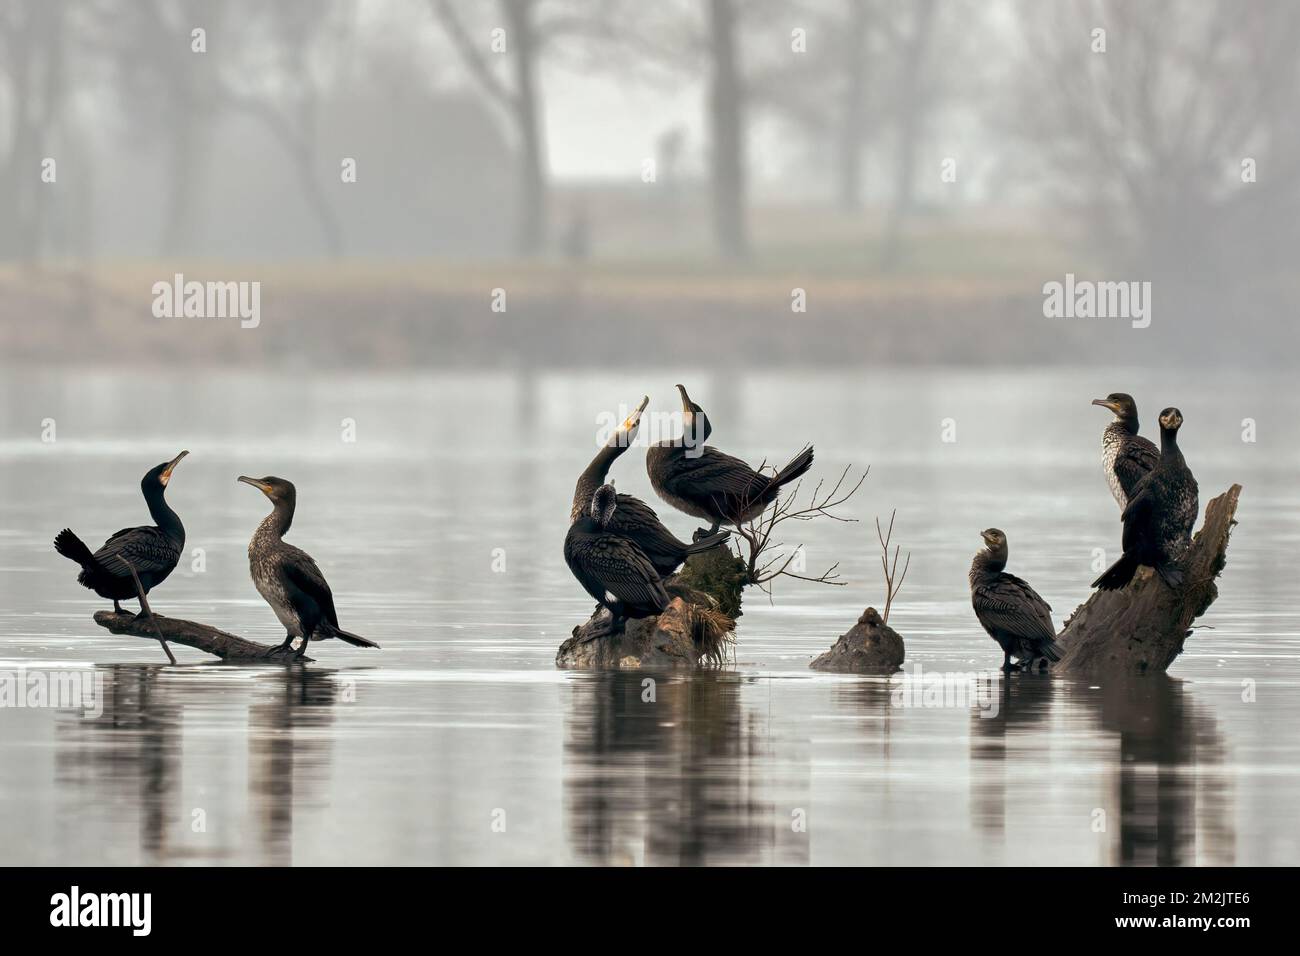 Grands cormorans reposant sur le bois dans la rivière. Matin d'hiver brumeux. Genre Phalacrocorax carbo.Trencin, Slovaquie. Banque D'Images